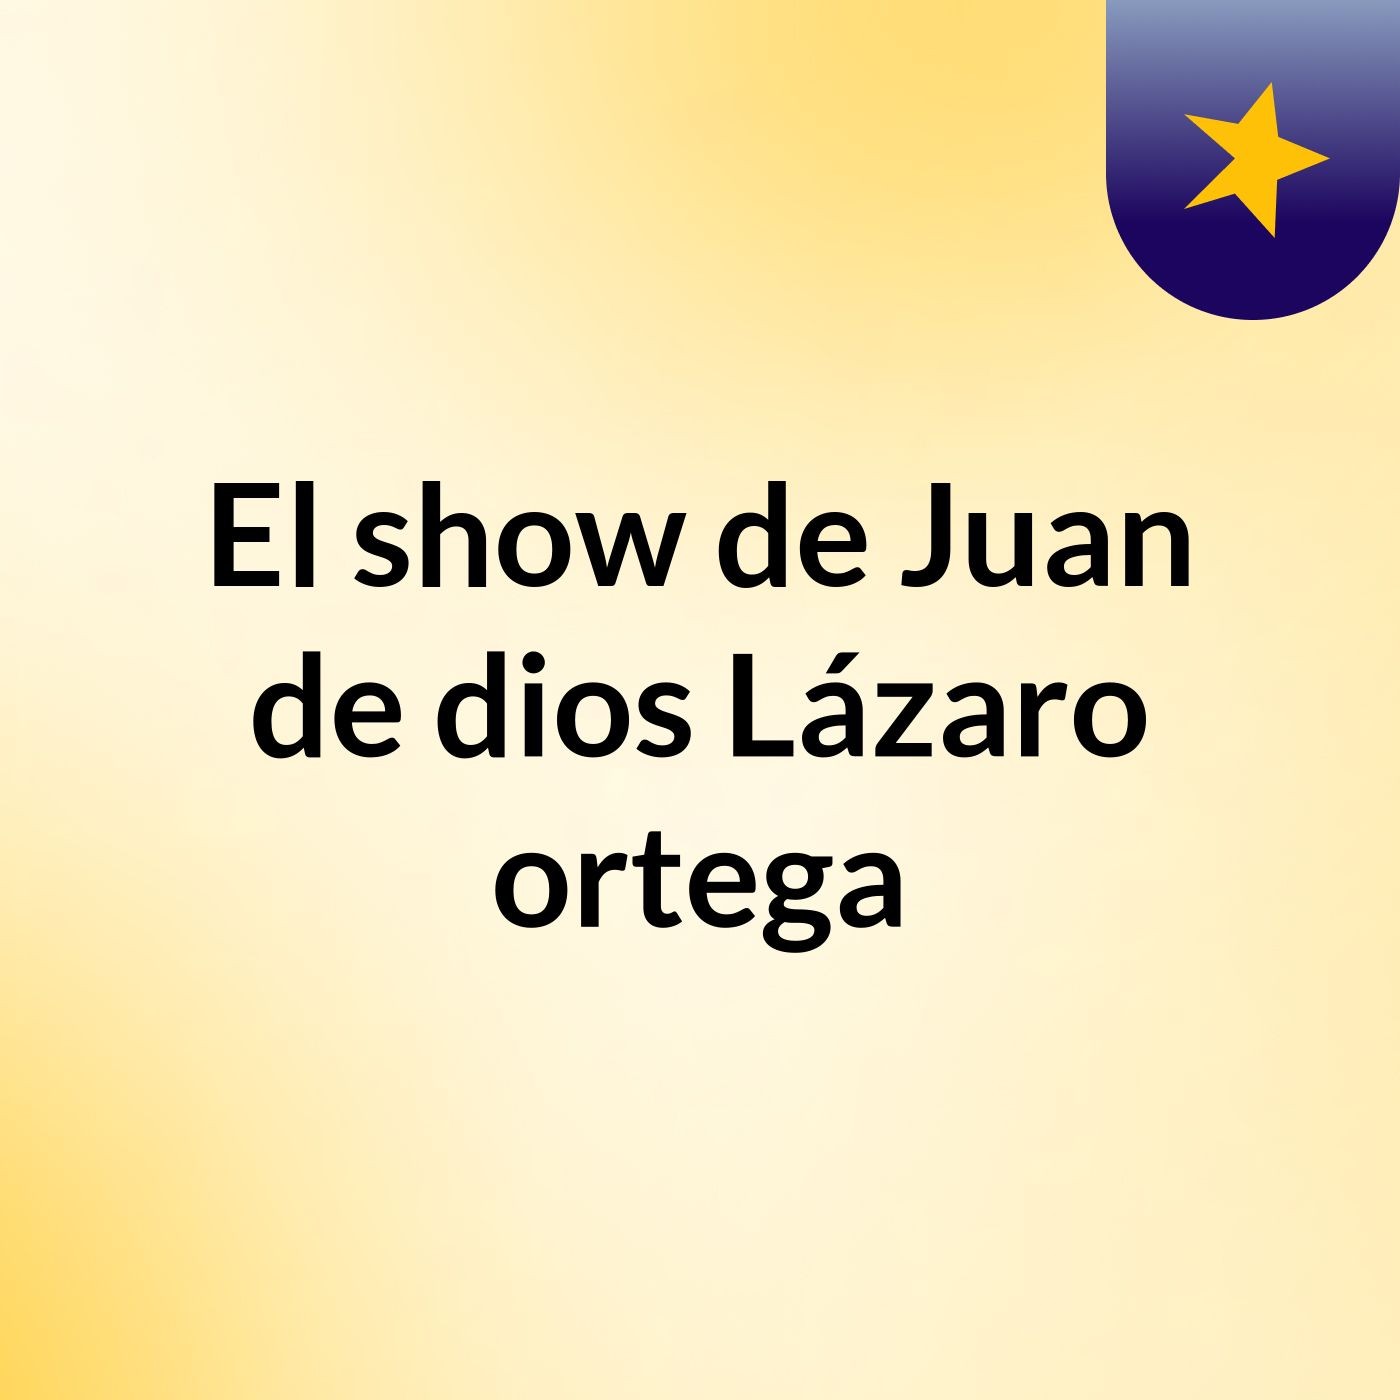 El show de Juan de dios Lázaro ortega